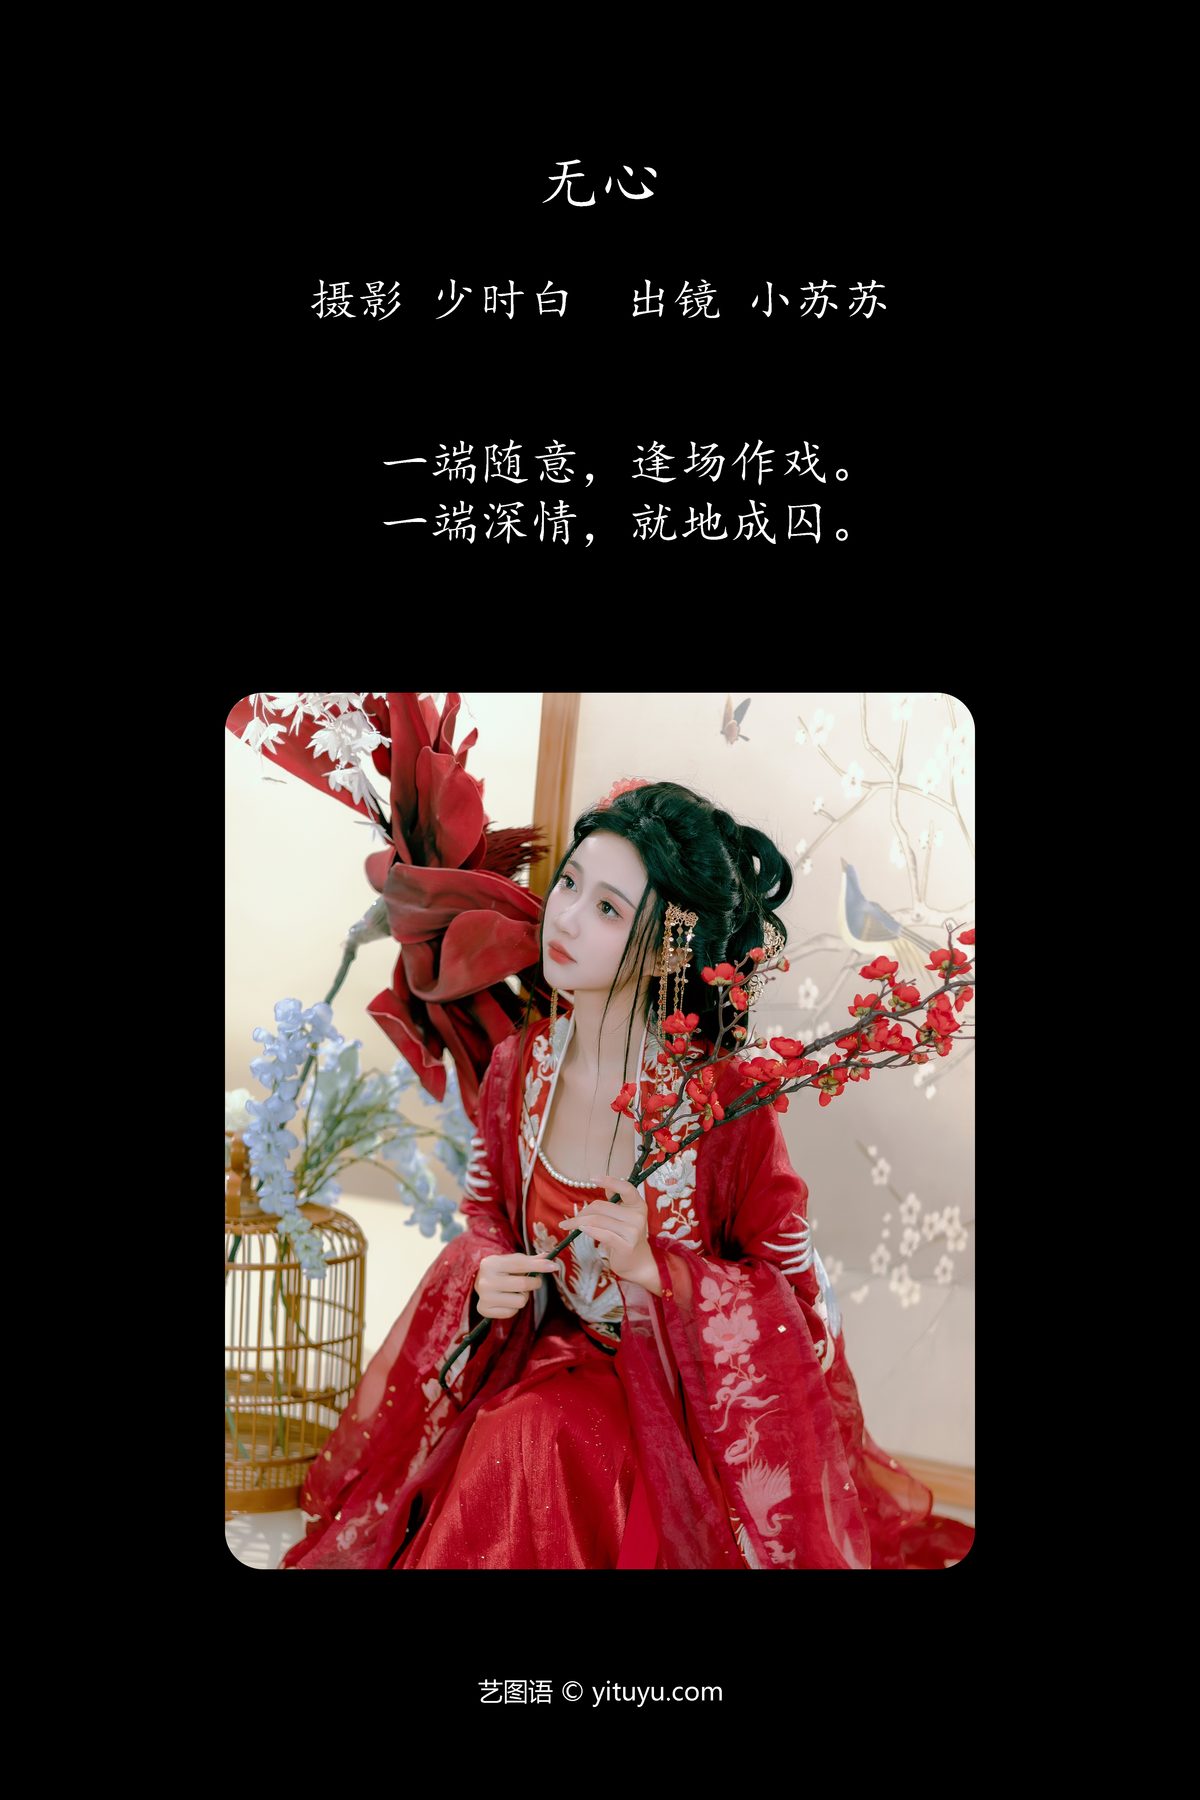 YiTuYu艺图语 Vol 5633 Qi Luo Sheng De Xiao Su Su 0002 4342102988.jpg